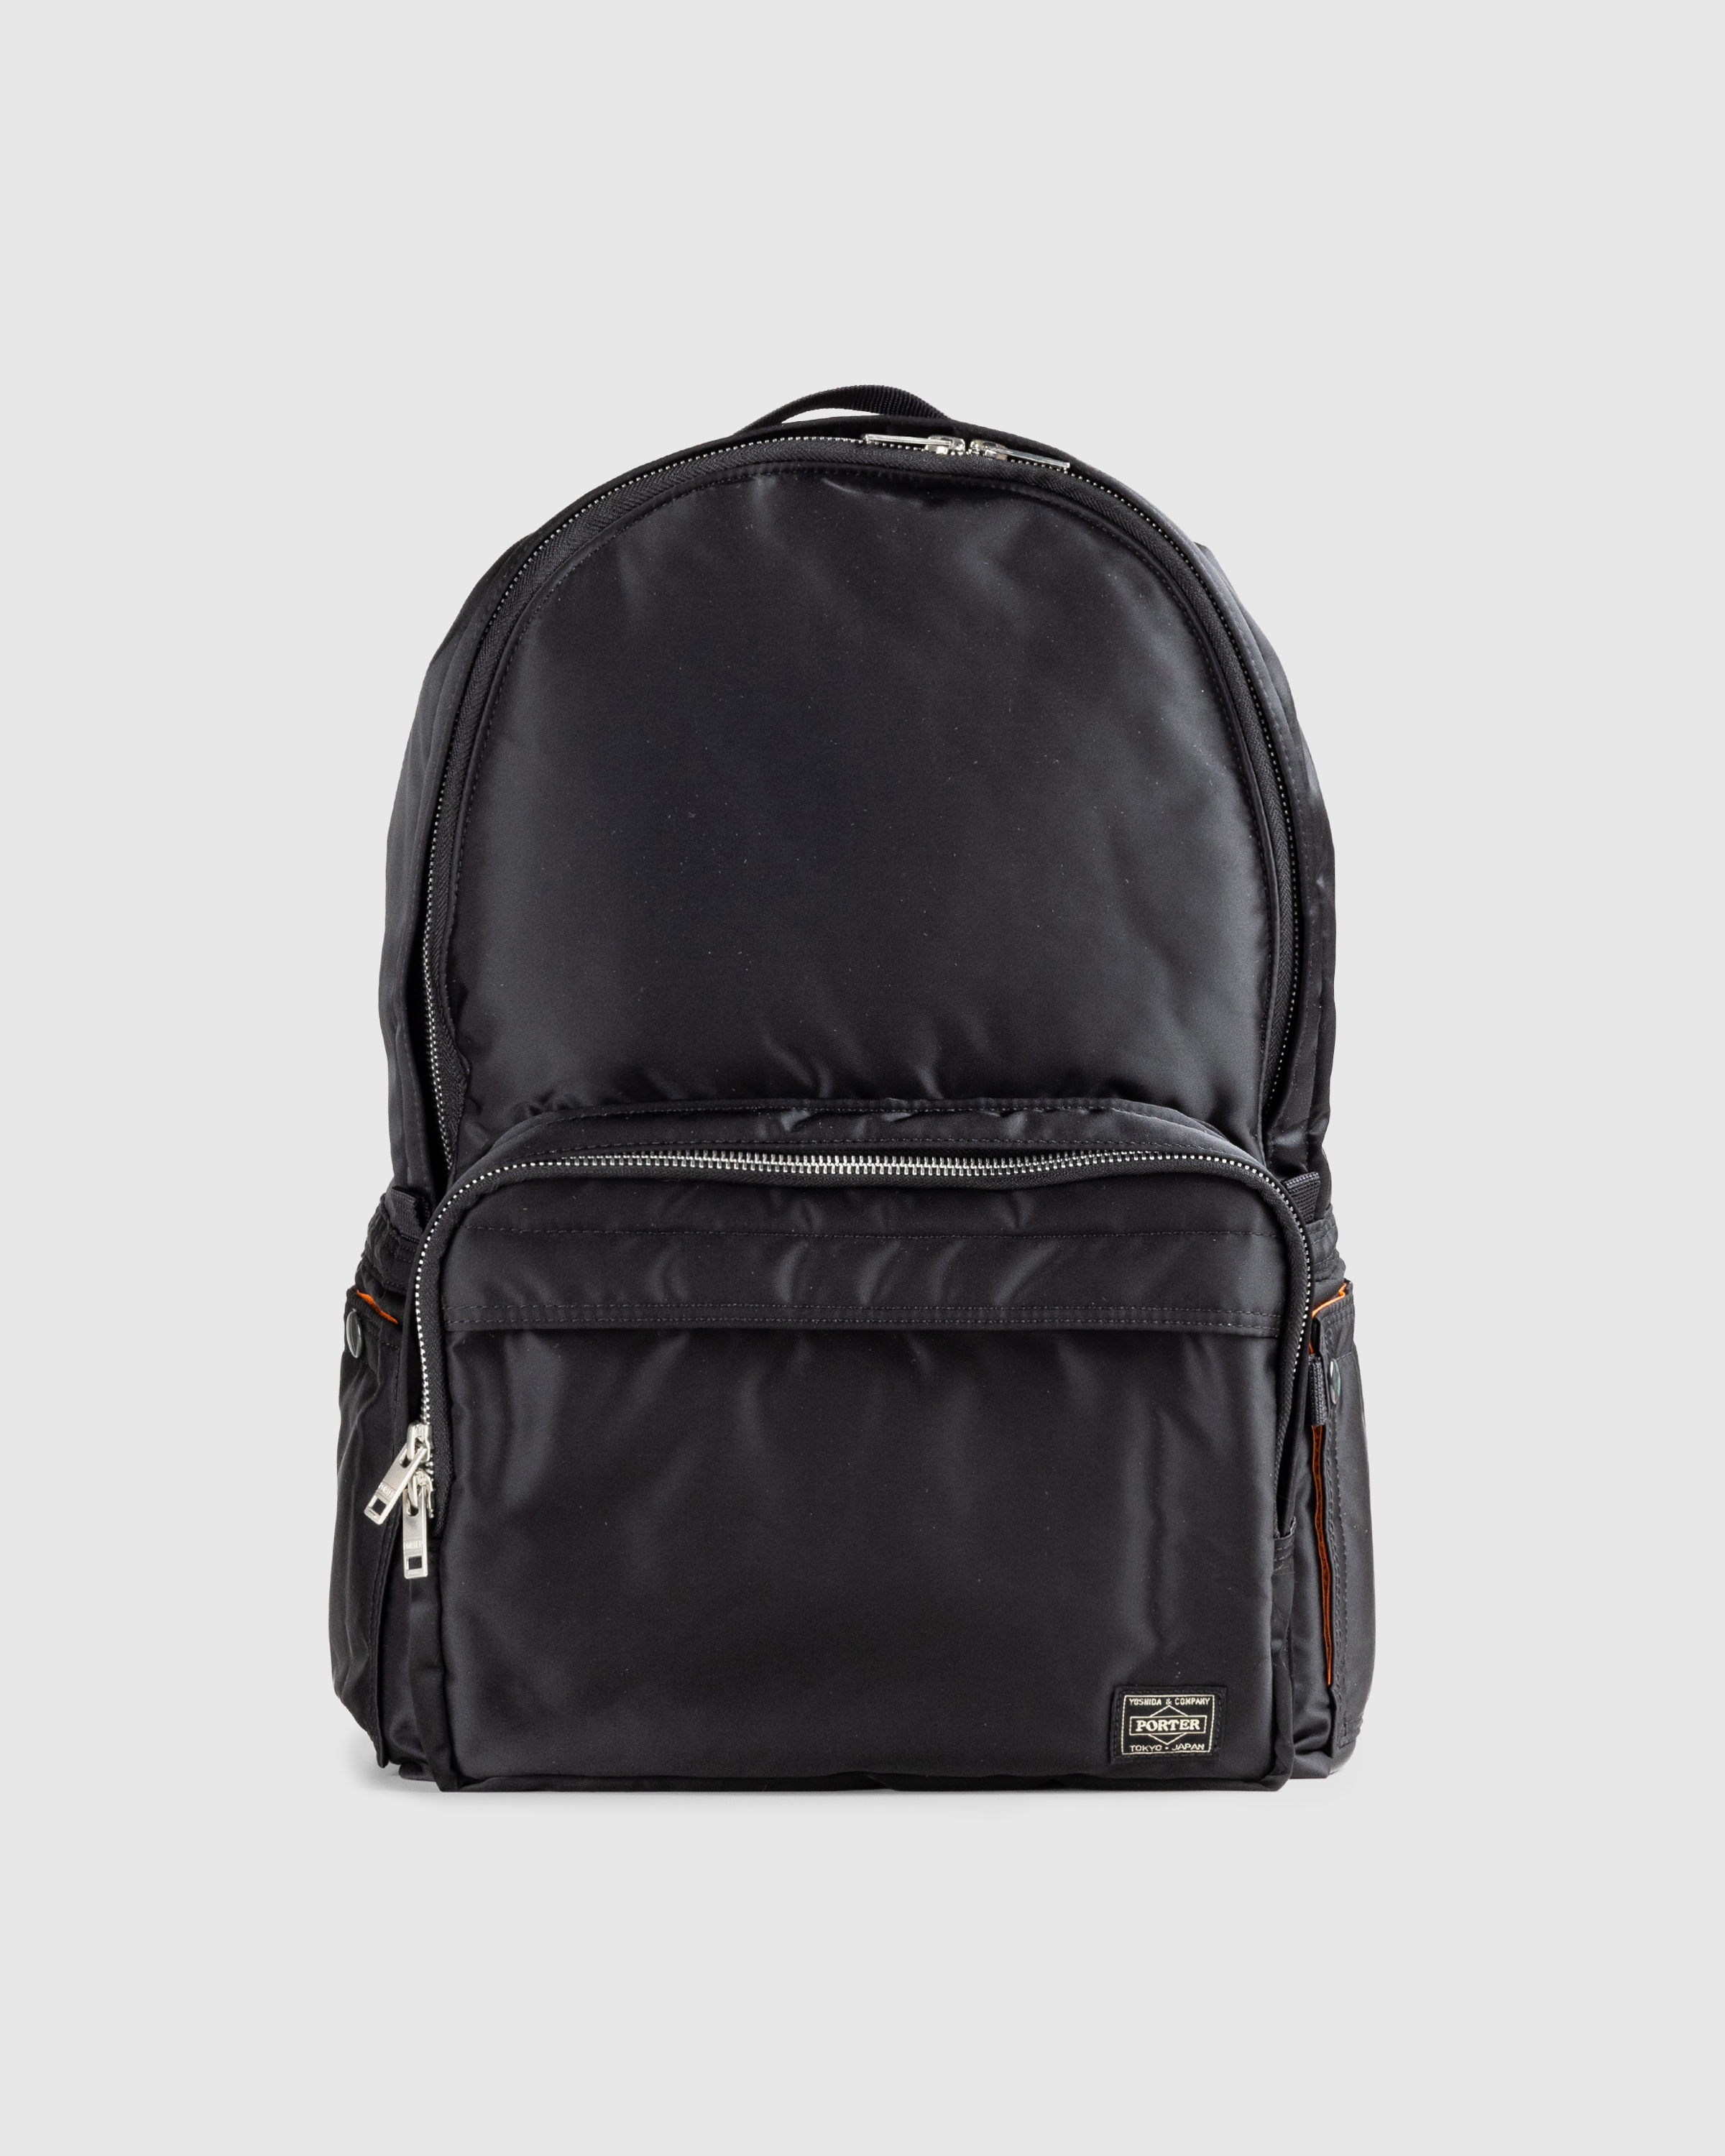 Porter-Yoshida & Co. – Tanker Daypack Black - Shoulder Bags - Black - Image 1